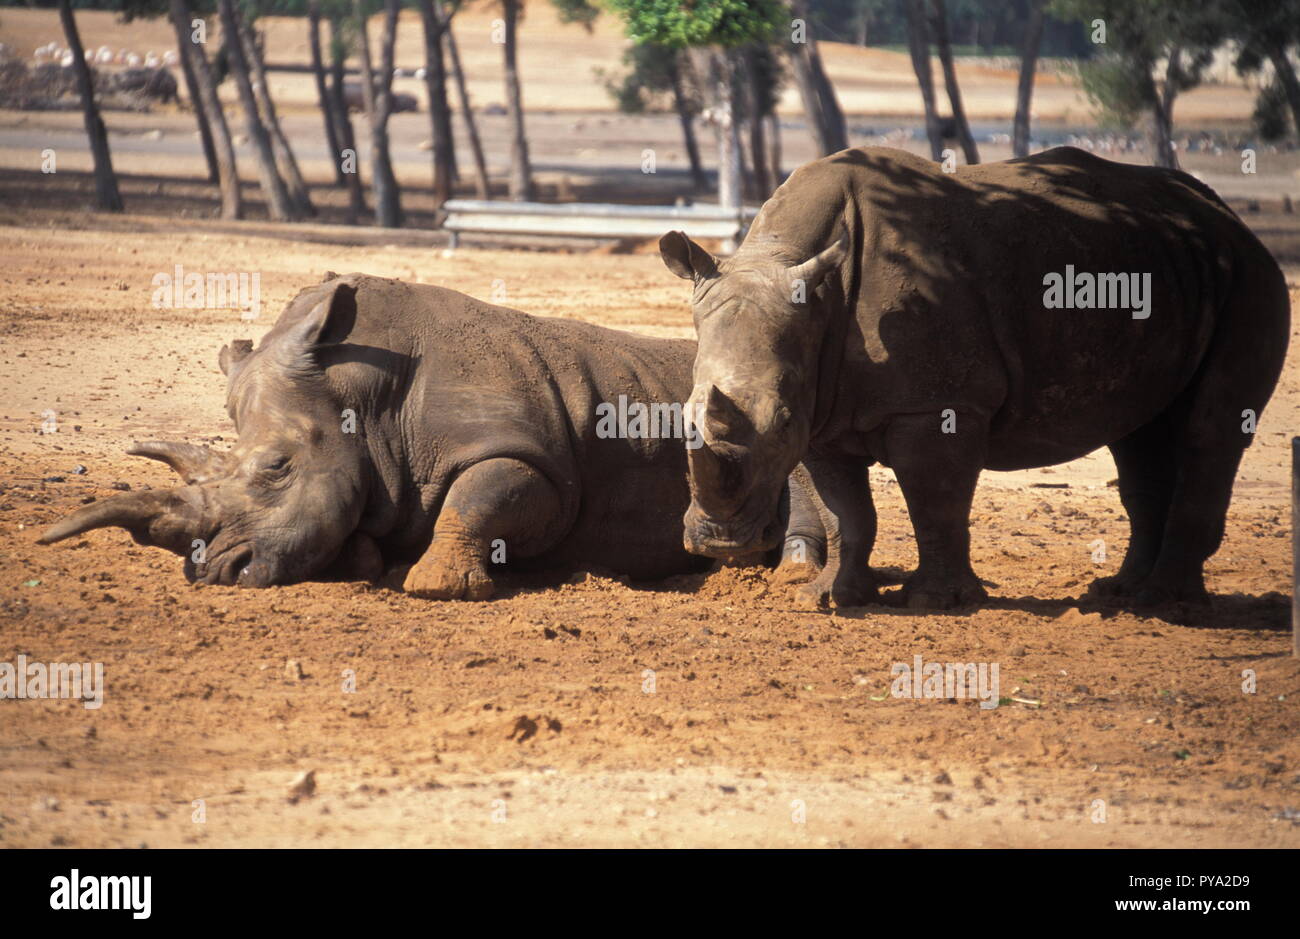 Rhinoceros, pair of Rhino with mud Stock Photo